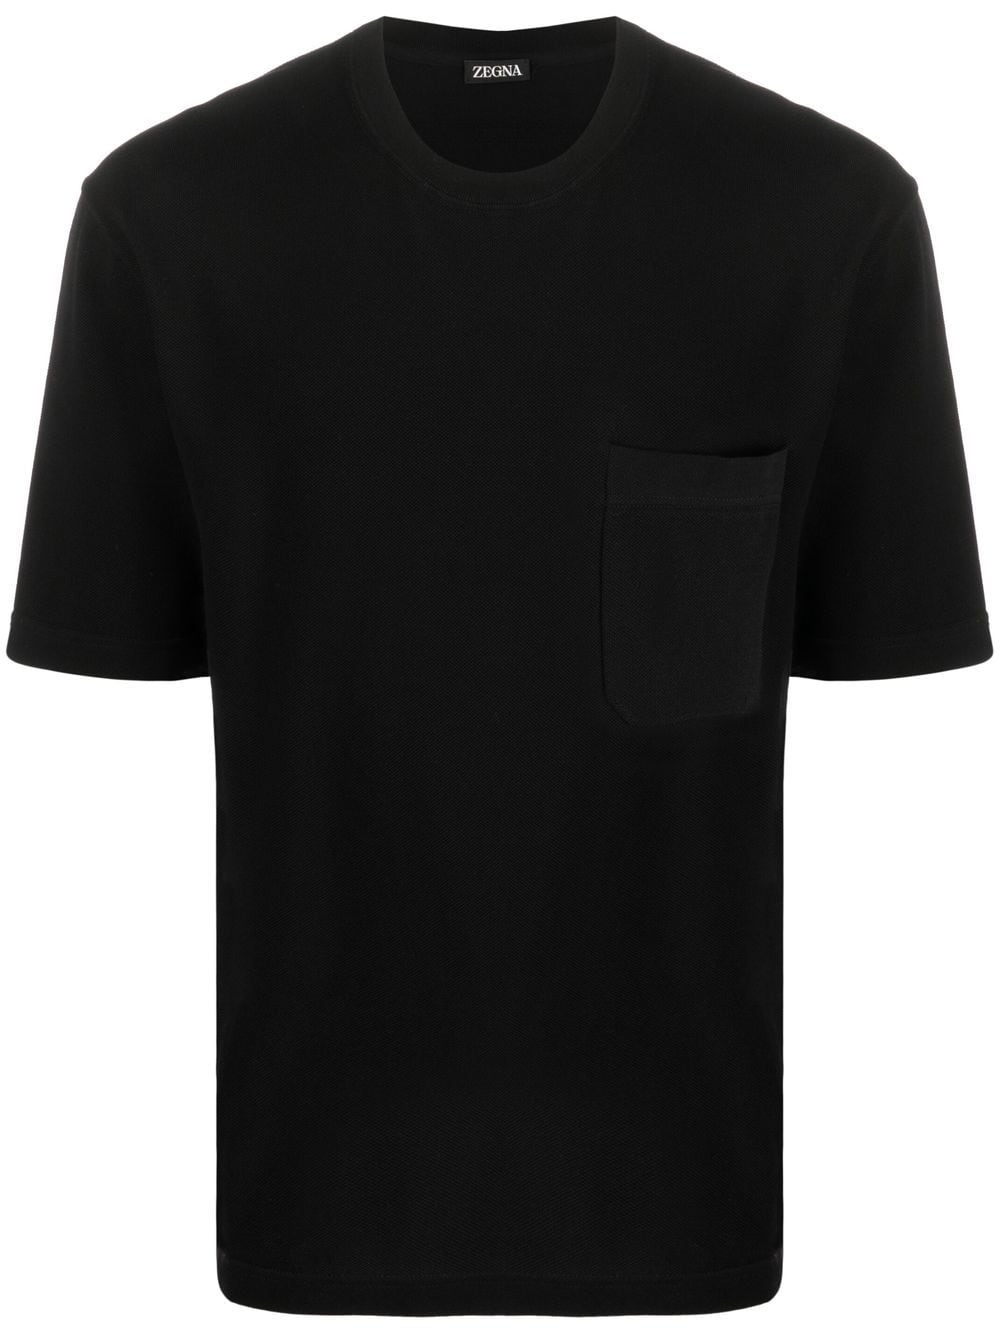 Zegna T-Shirt mit Brusttasche - Schwarz von Zegna